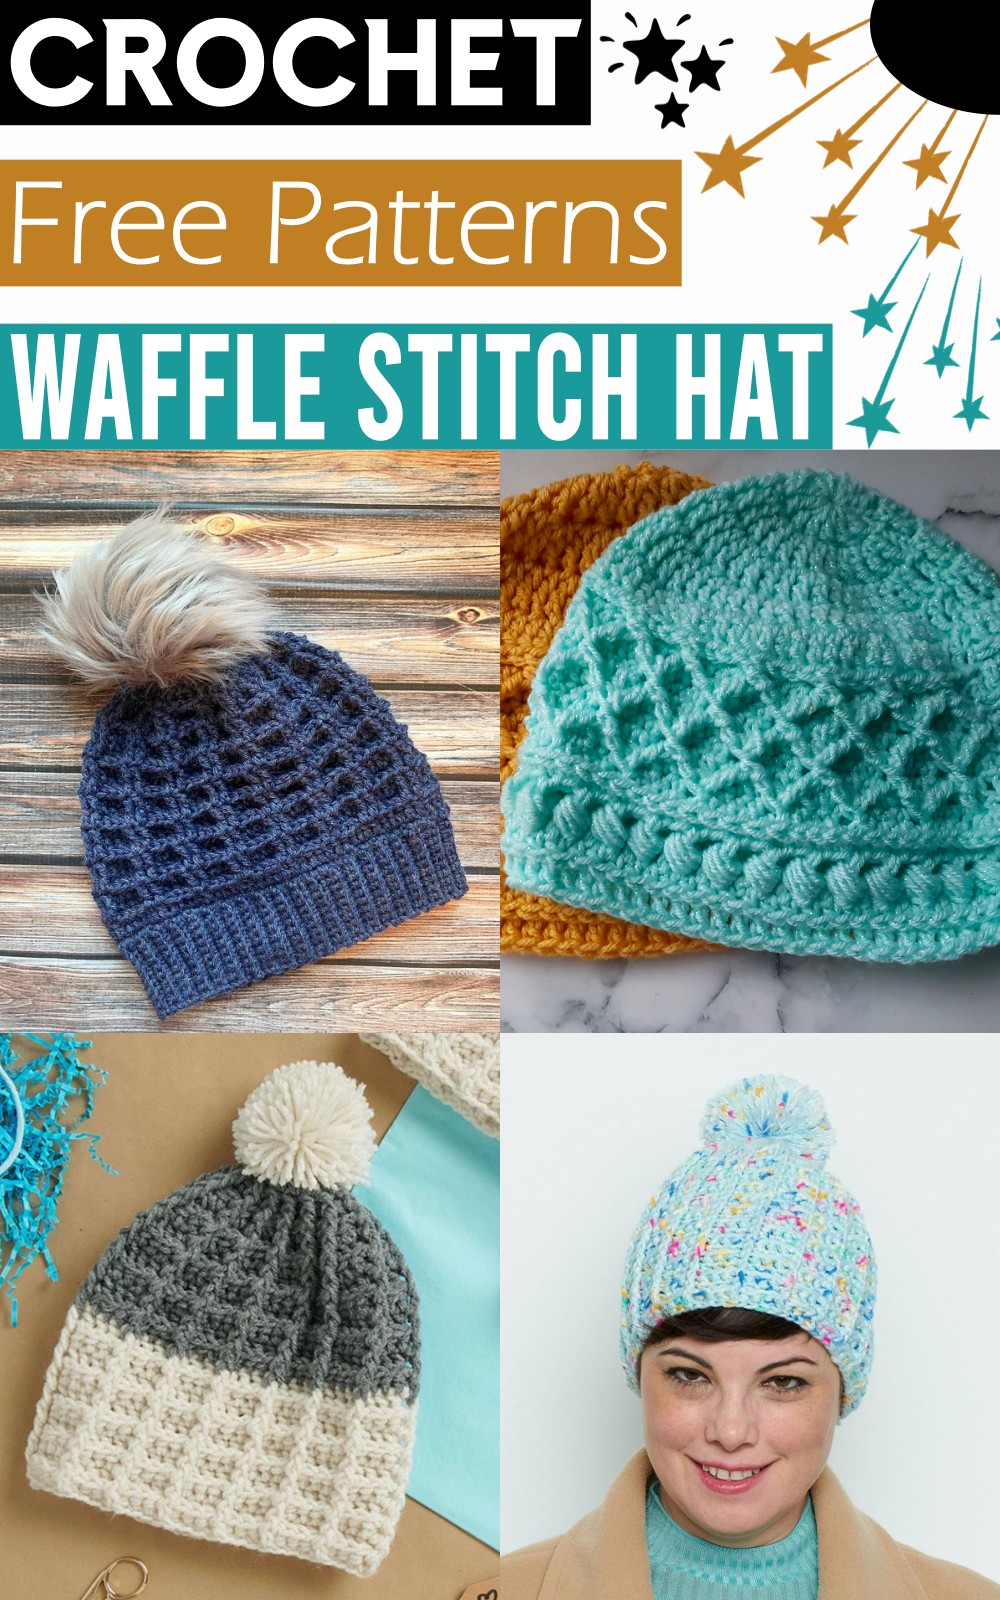 Crochet Waffle Stitch Hat Patterns